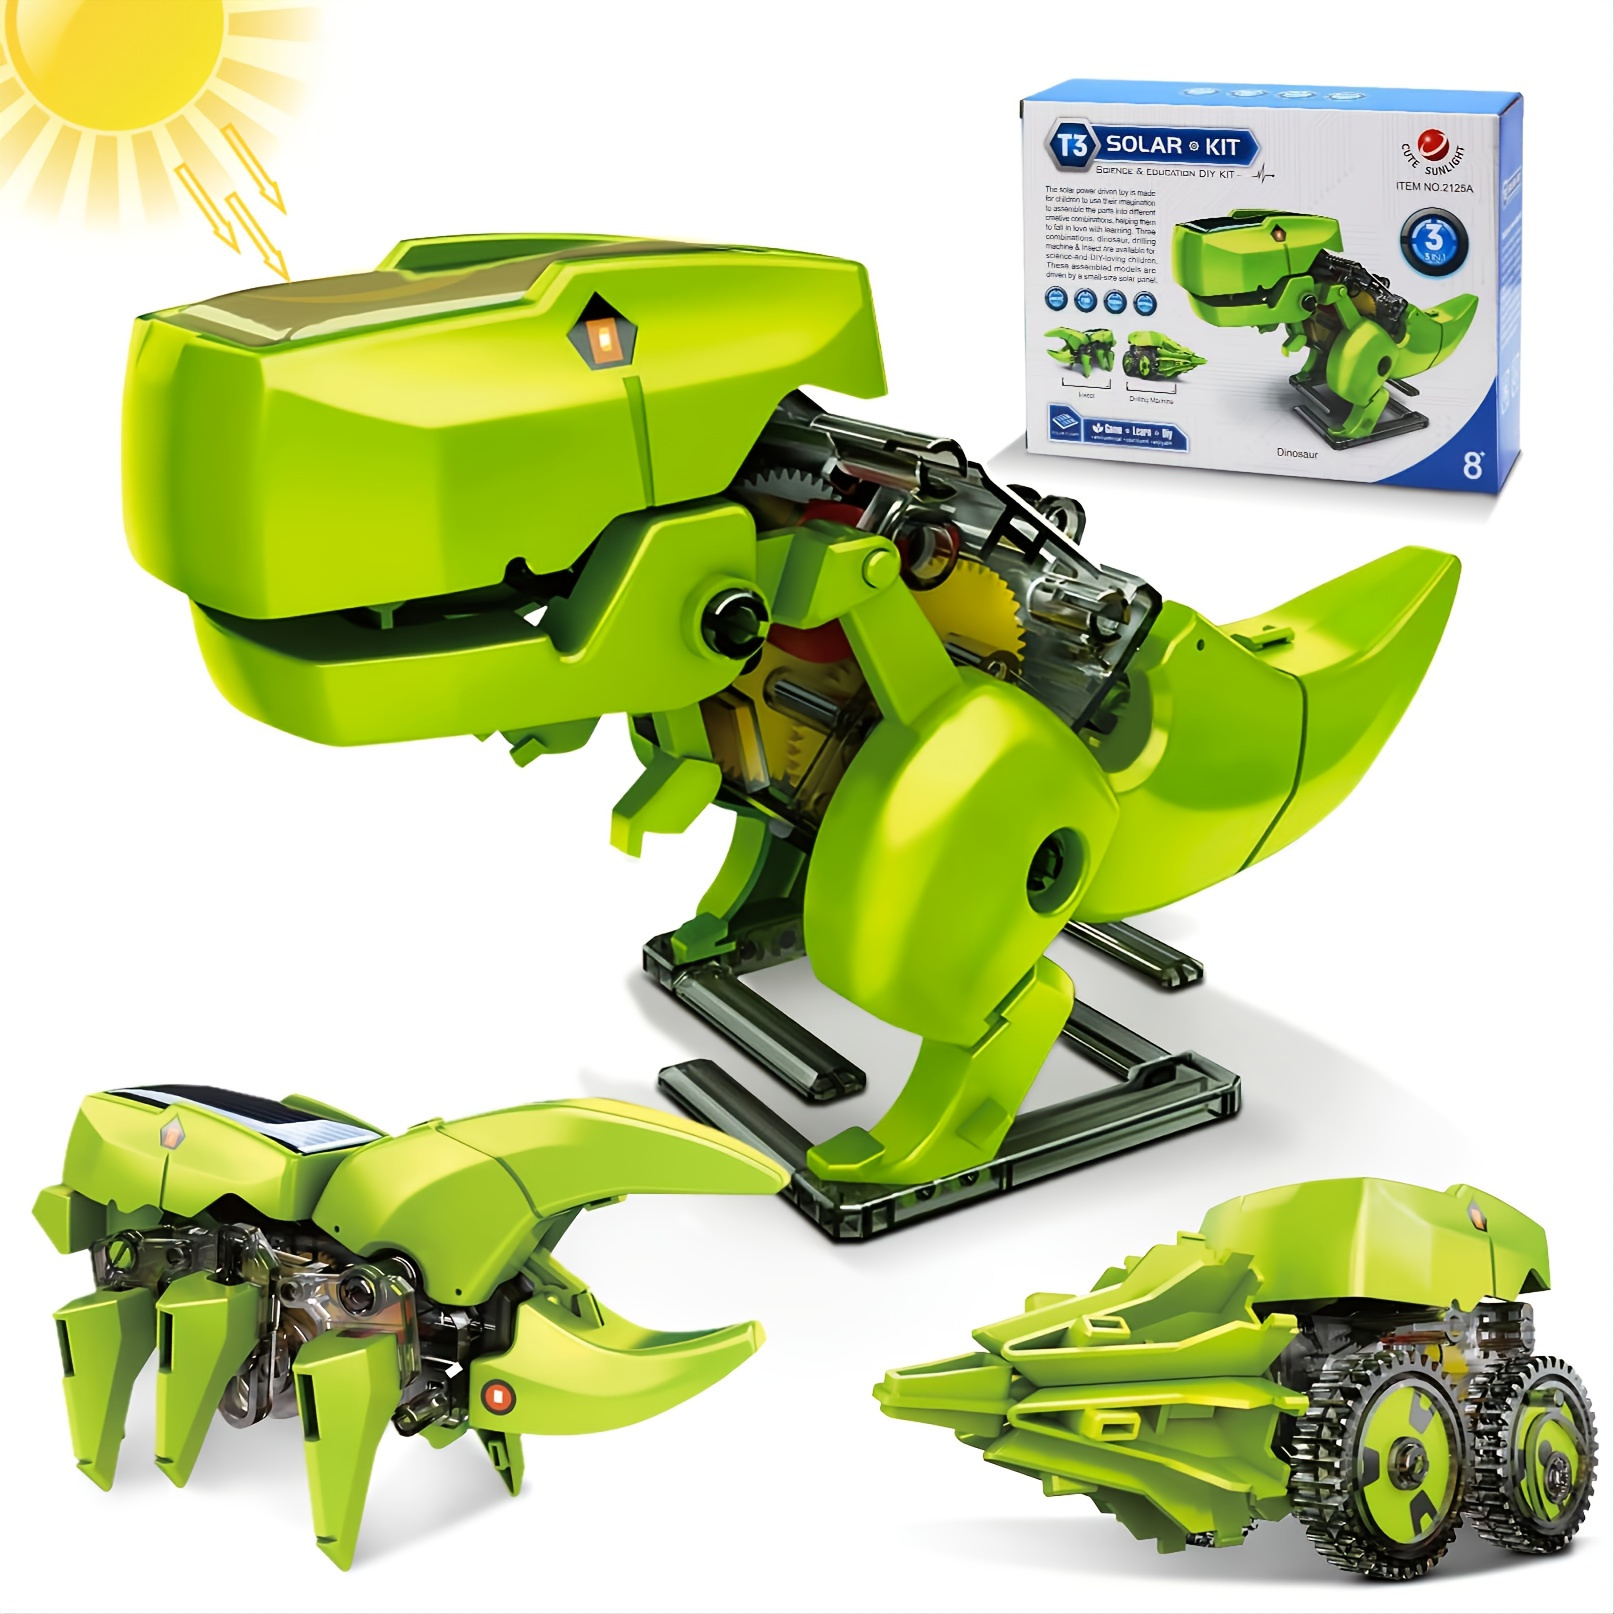  FUNTECH Robotica para niños 8 años o Mas, Construye tu Propio  Robot Solar, 11 Robot para Montar en 1, Taller de Robots y Kit Robotica,  Robot Juguete Educativo Stem, Regalos niños (231 Piezas)